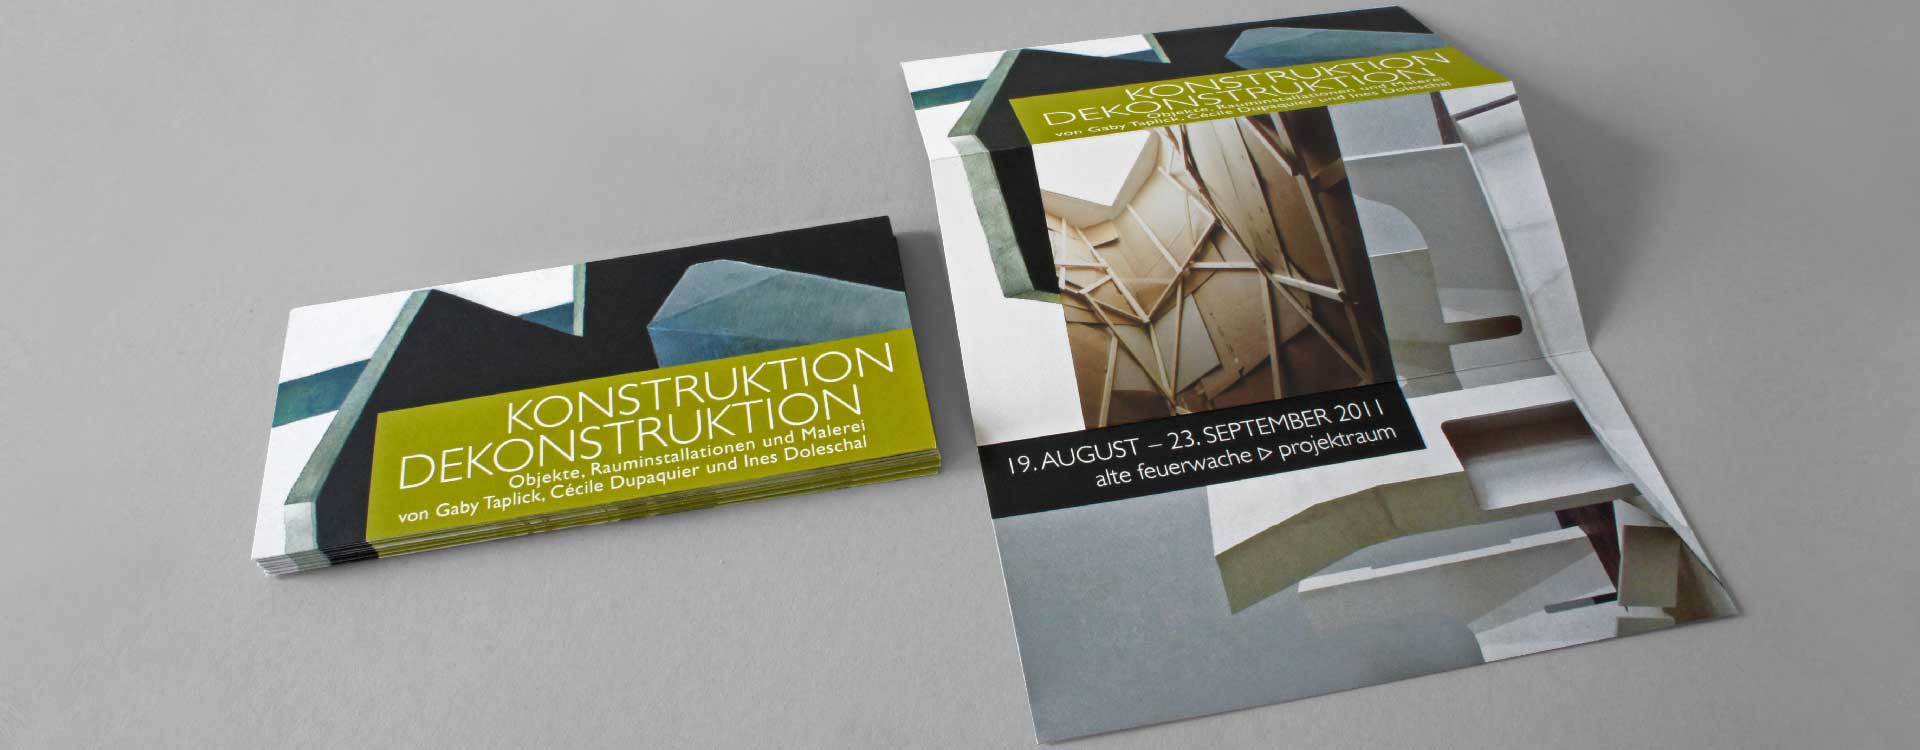 Faltblatt zur Ausstellung „Konstruktion Dekonstruktion“ im Projektraum Alte Feuerwache, Berlin; Design: Kattrin Richter | Büro für Grafikdesign